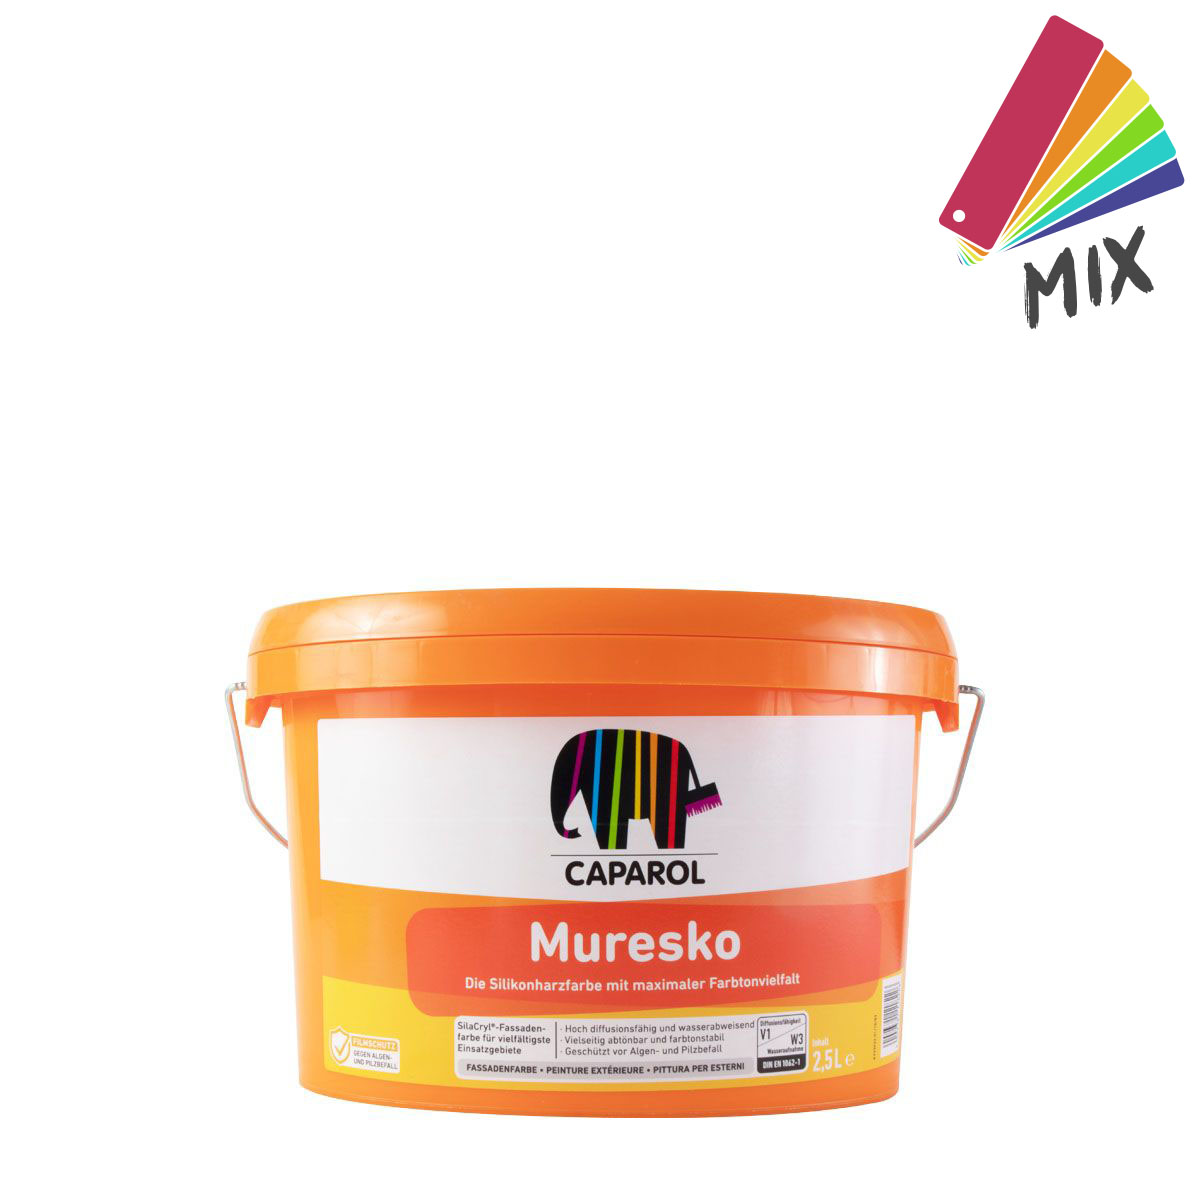 Caparol Muresko SilaCryl 2,5L MIX PG A, Siliconharz-Fassadenfarbe